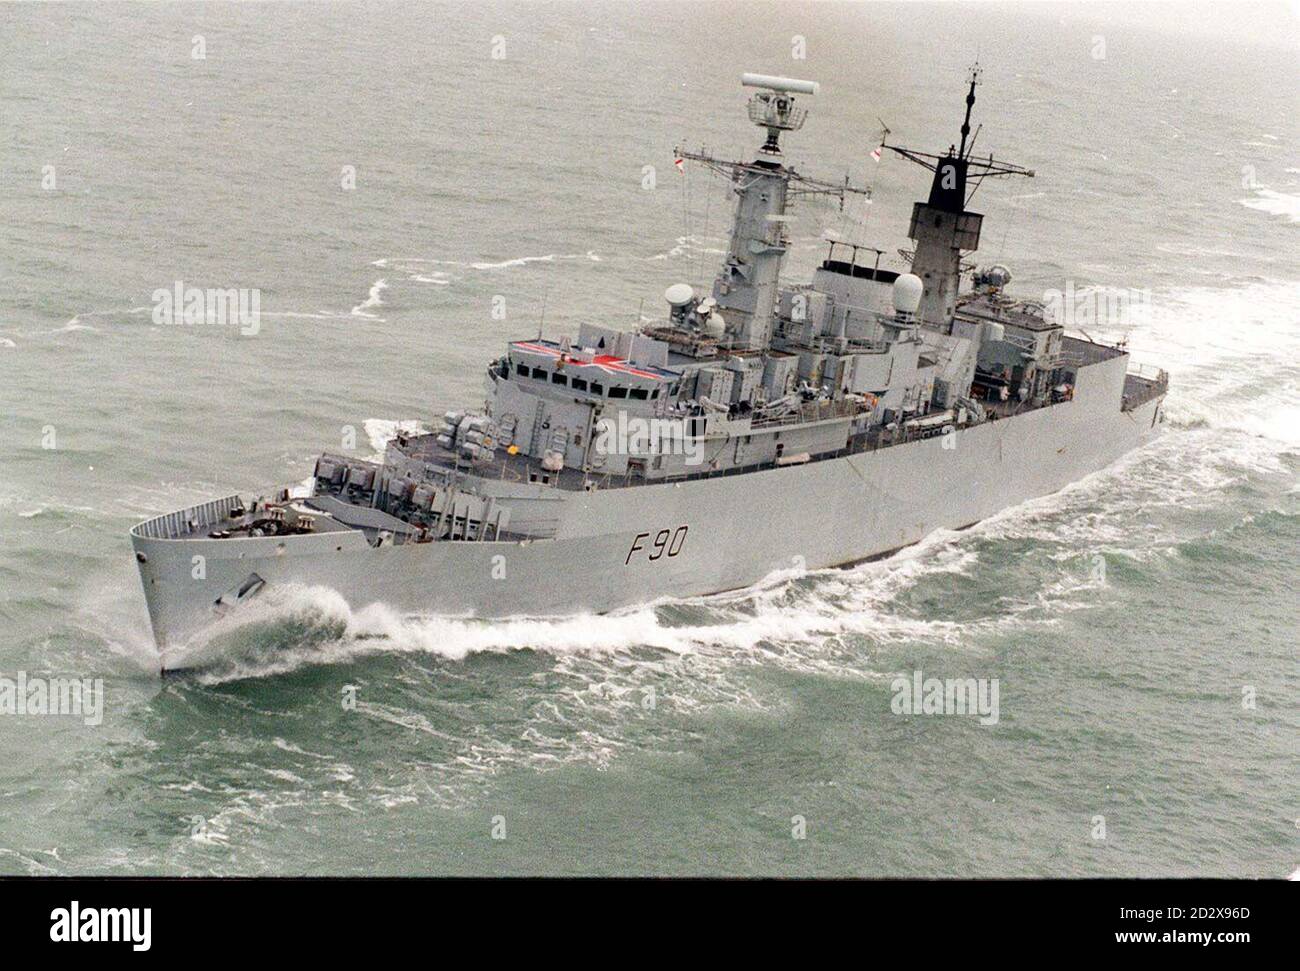 Akte vom 17.1.91 der HMS Brilliant, die morgen (Freitag) der brasilianischen Marine mit der alten Fregatte HMS Brazen des Herzogs von York übergeben wird. Siehe PA Story DEFENCE Brilliant. Foto von Barry Batchelor. Stockfoto